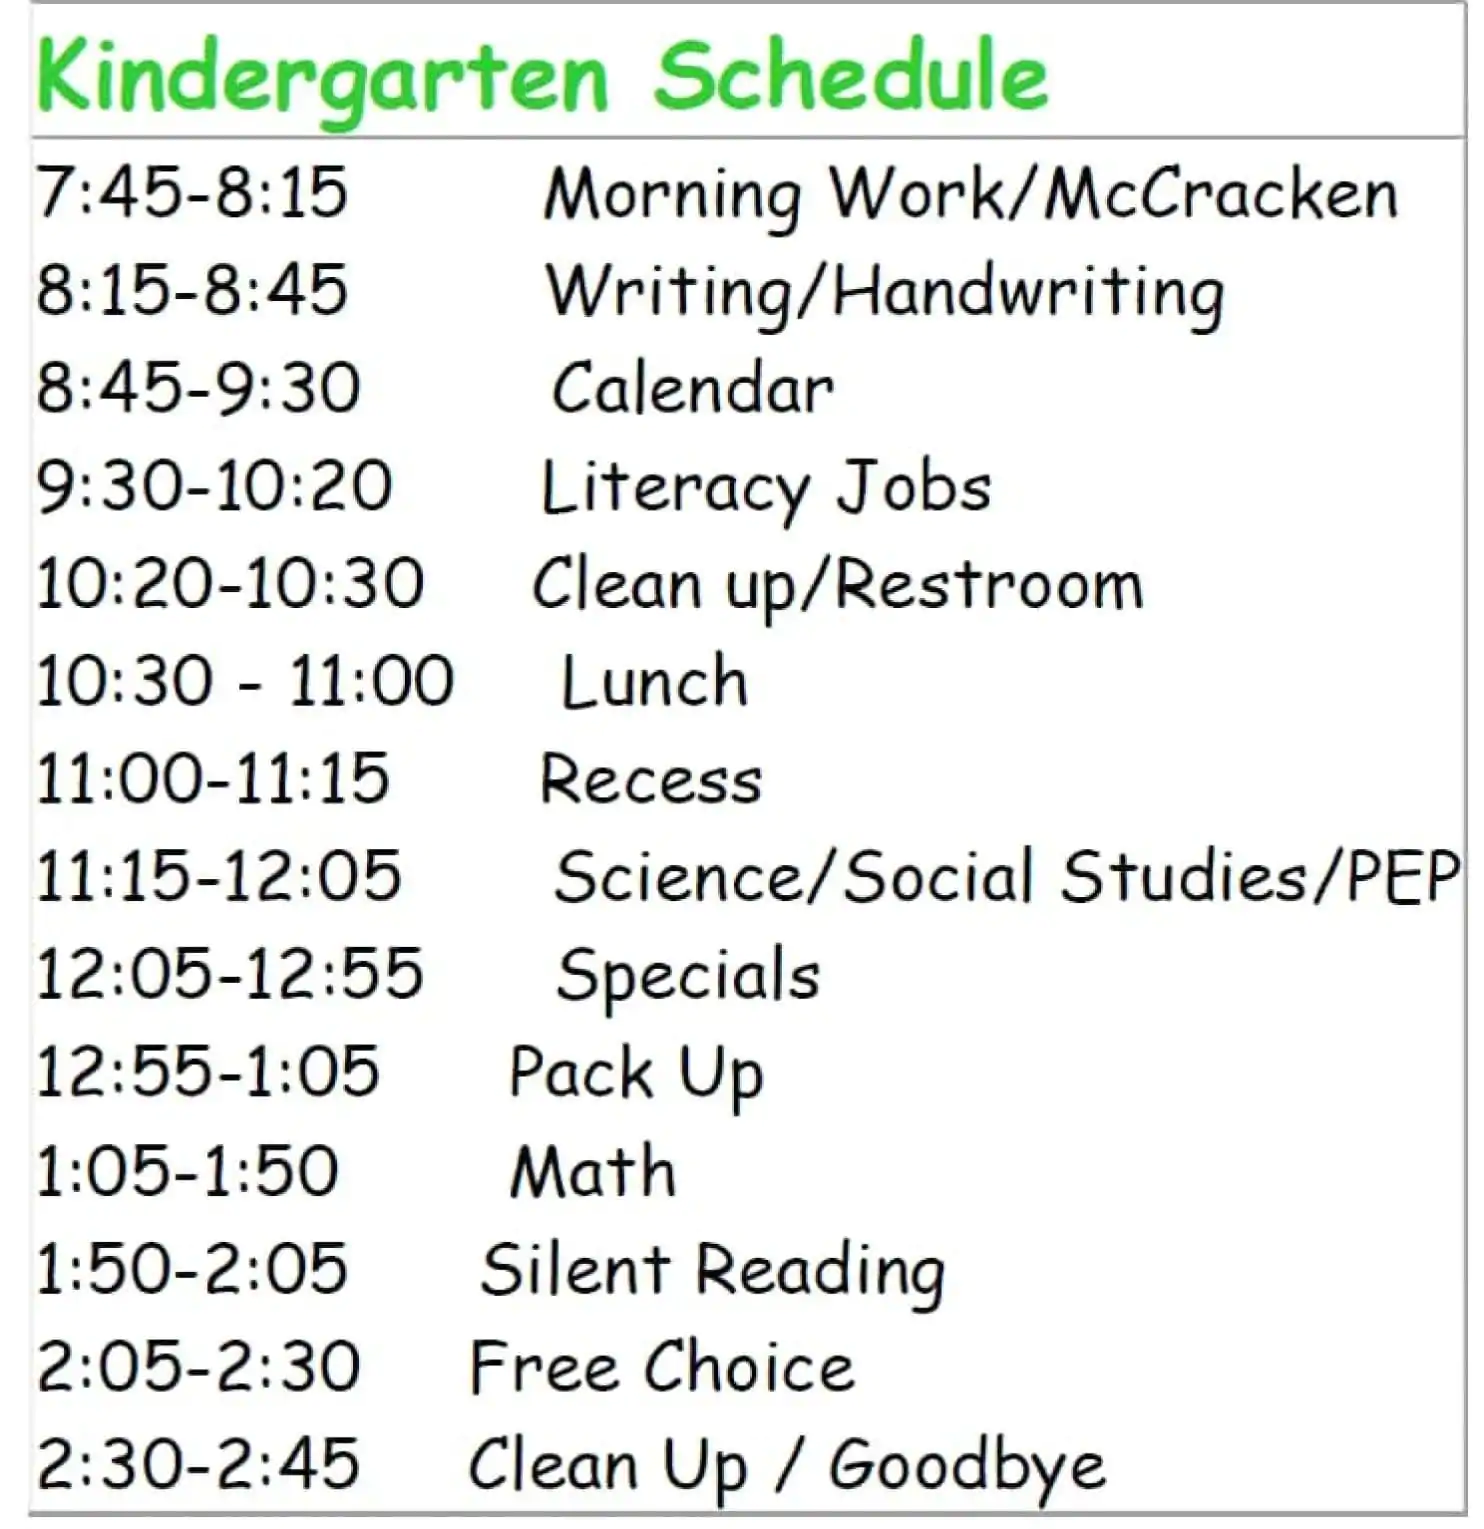 Sample kindergarten schedule